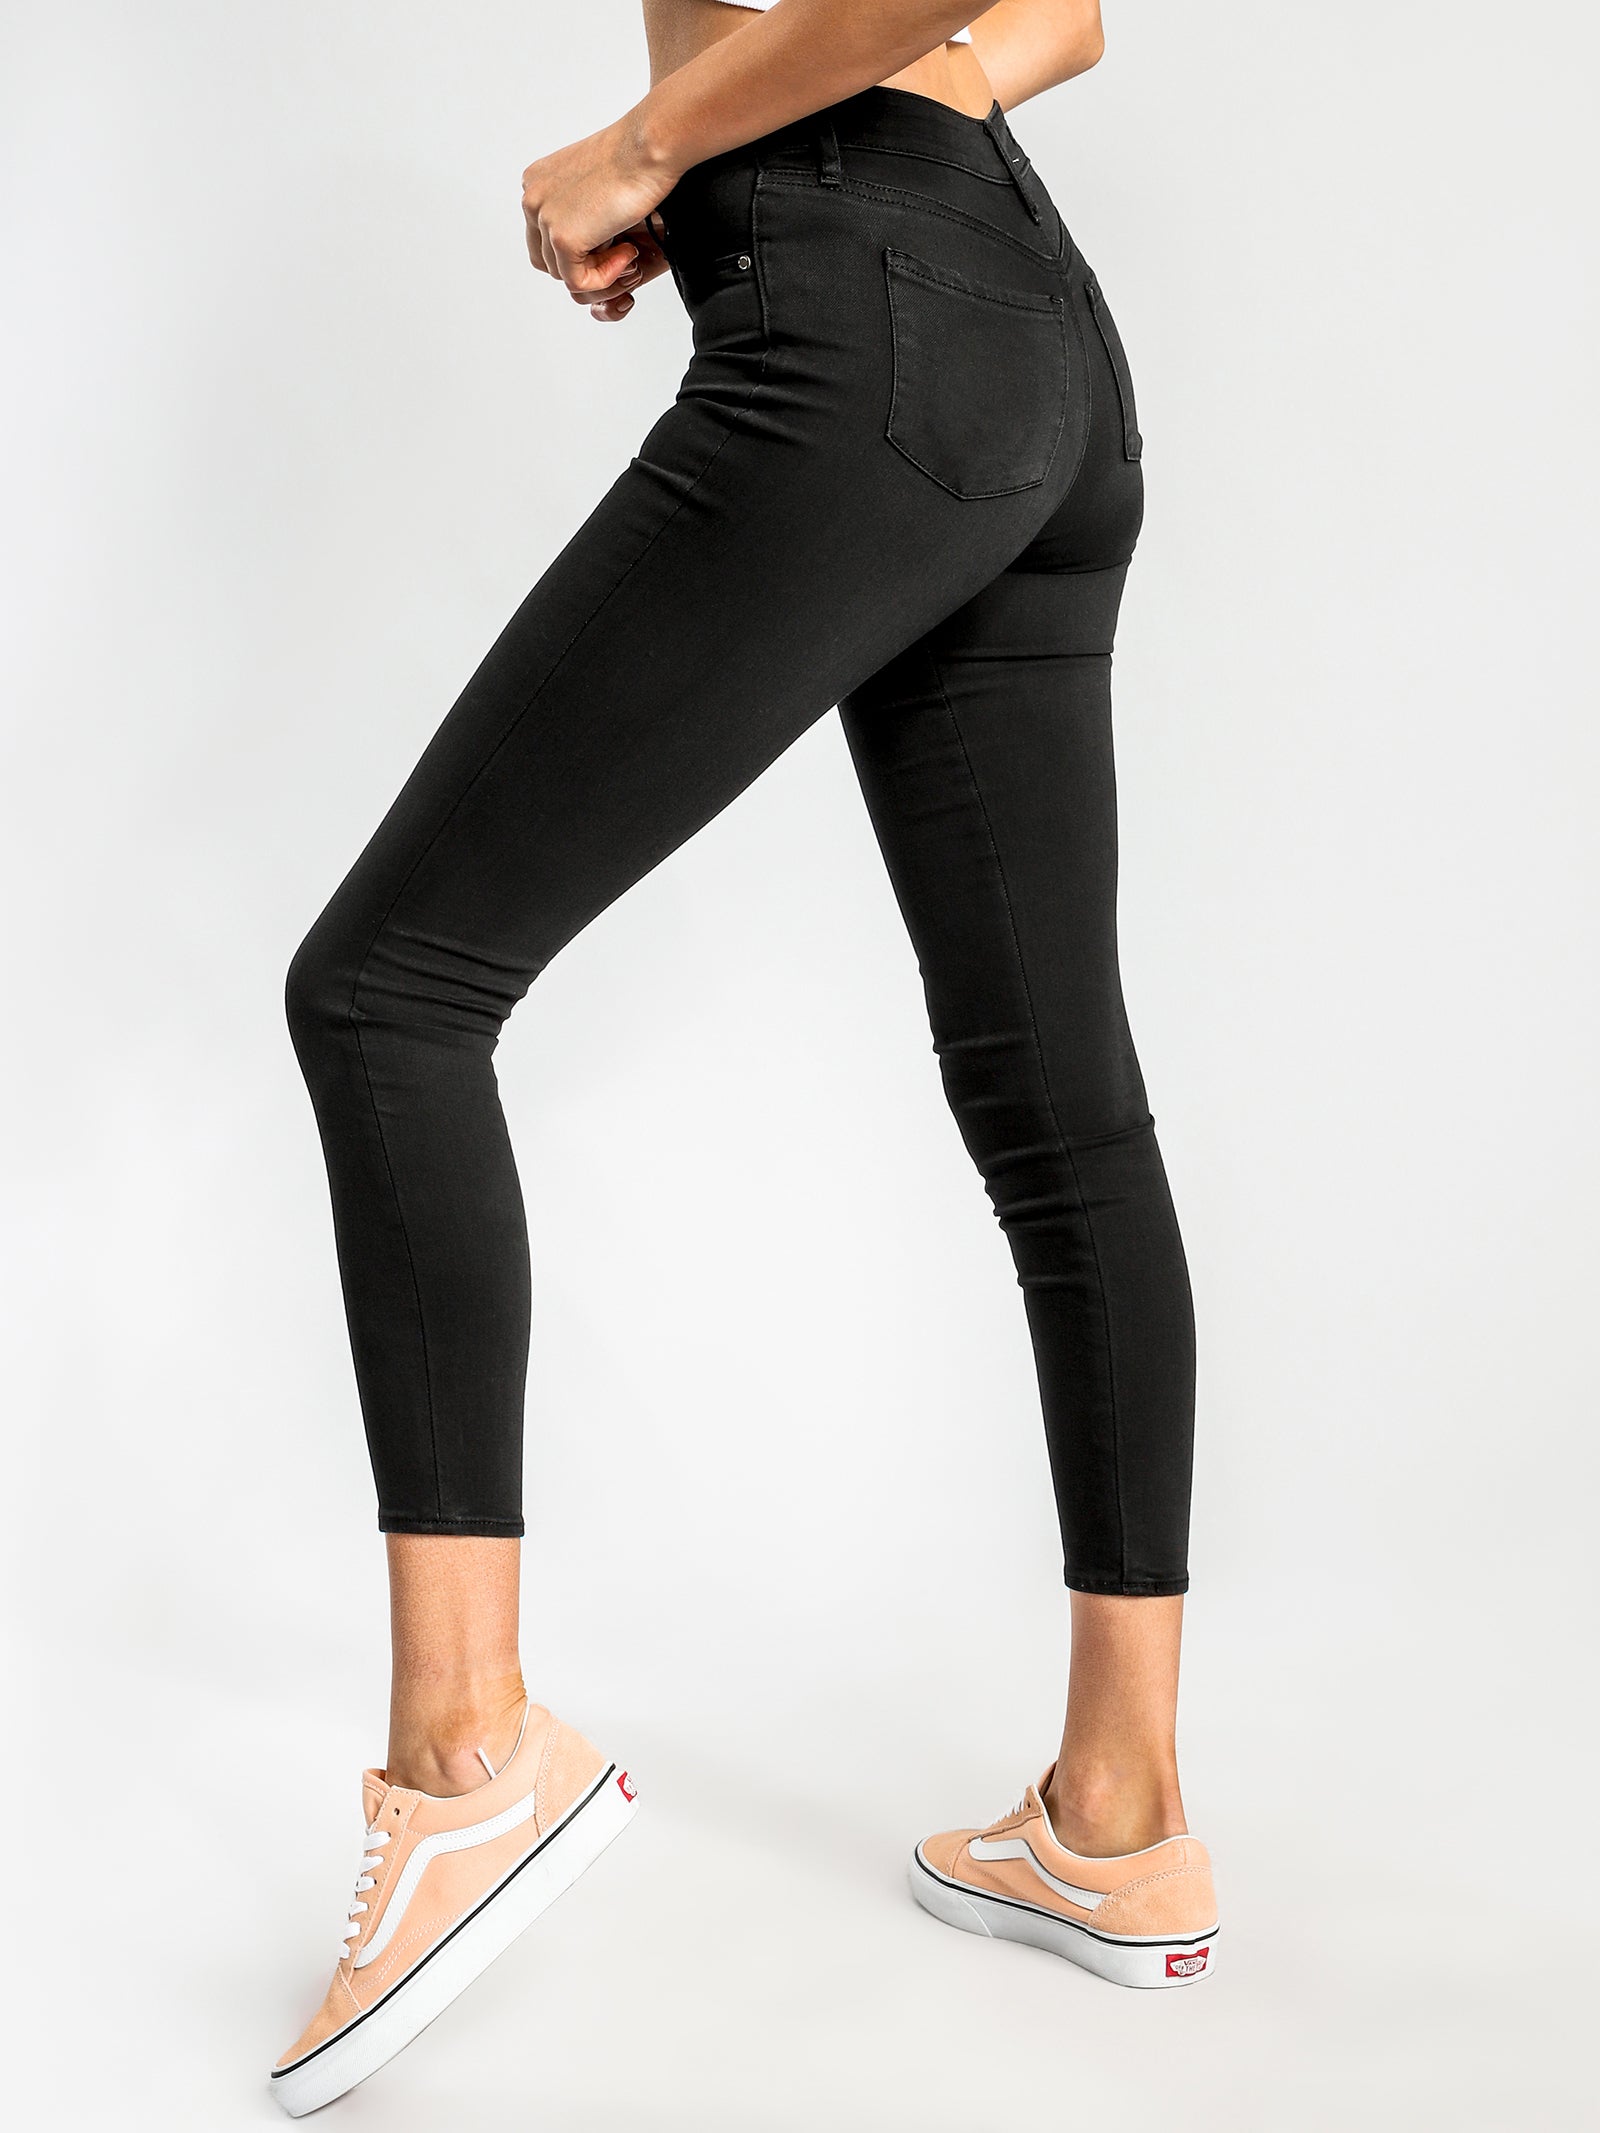 Cisco High-Rise Super-Skinny Jeans in Black-Out Denim - Glue Store